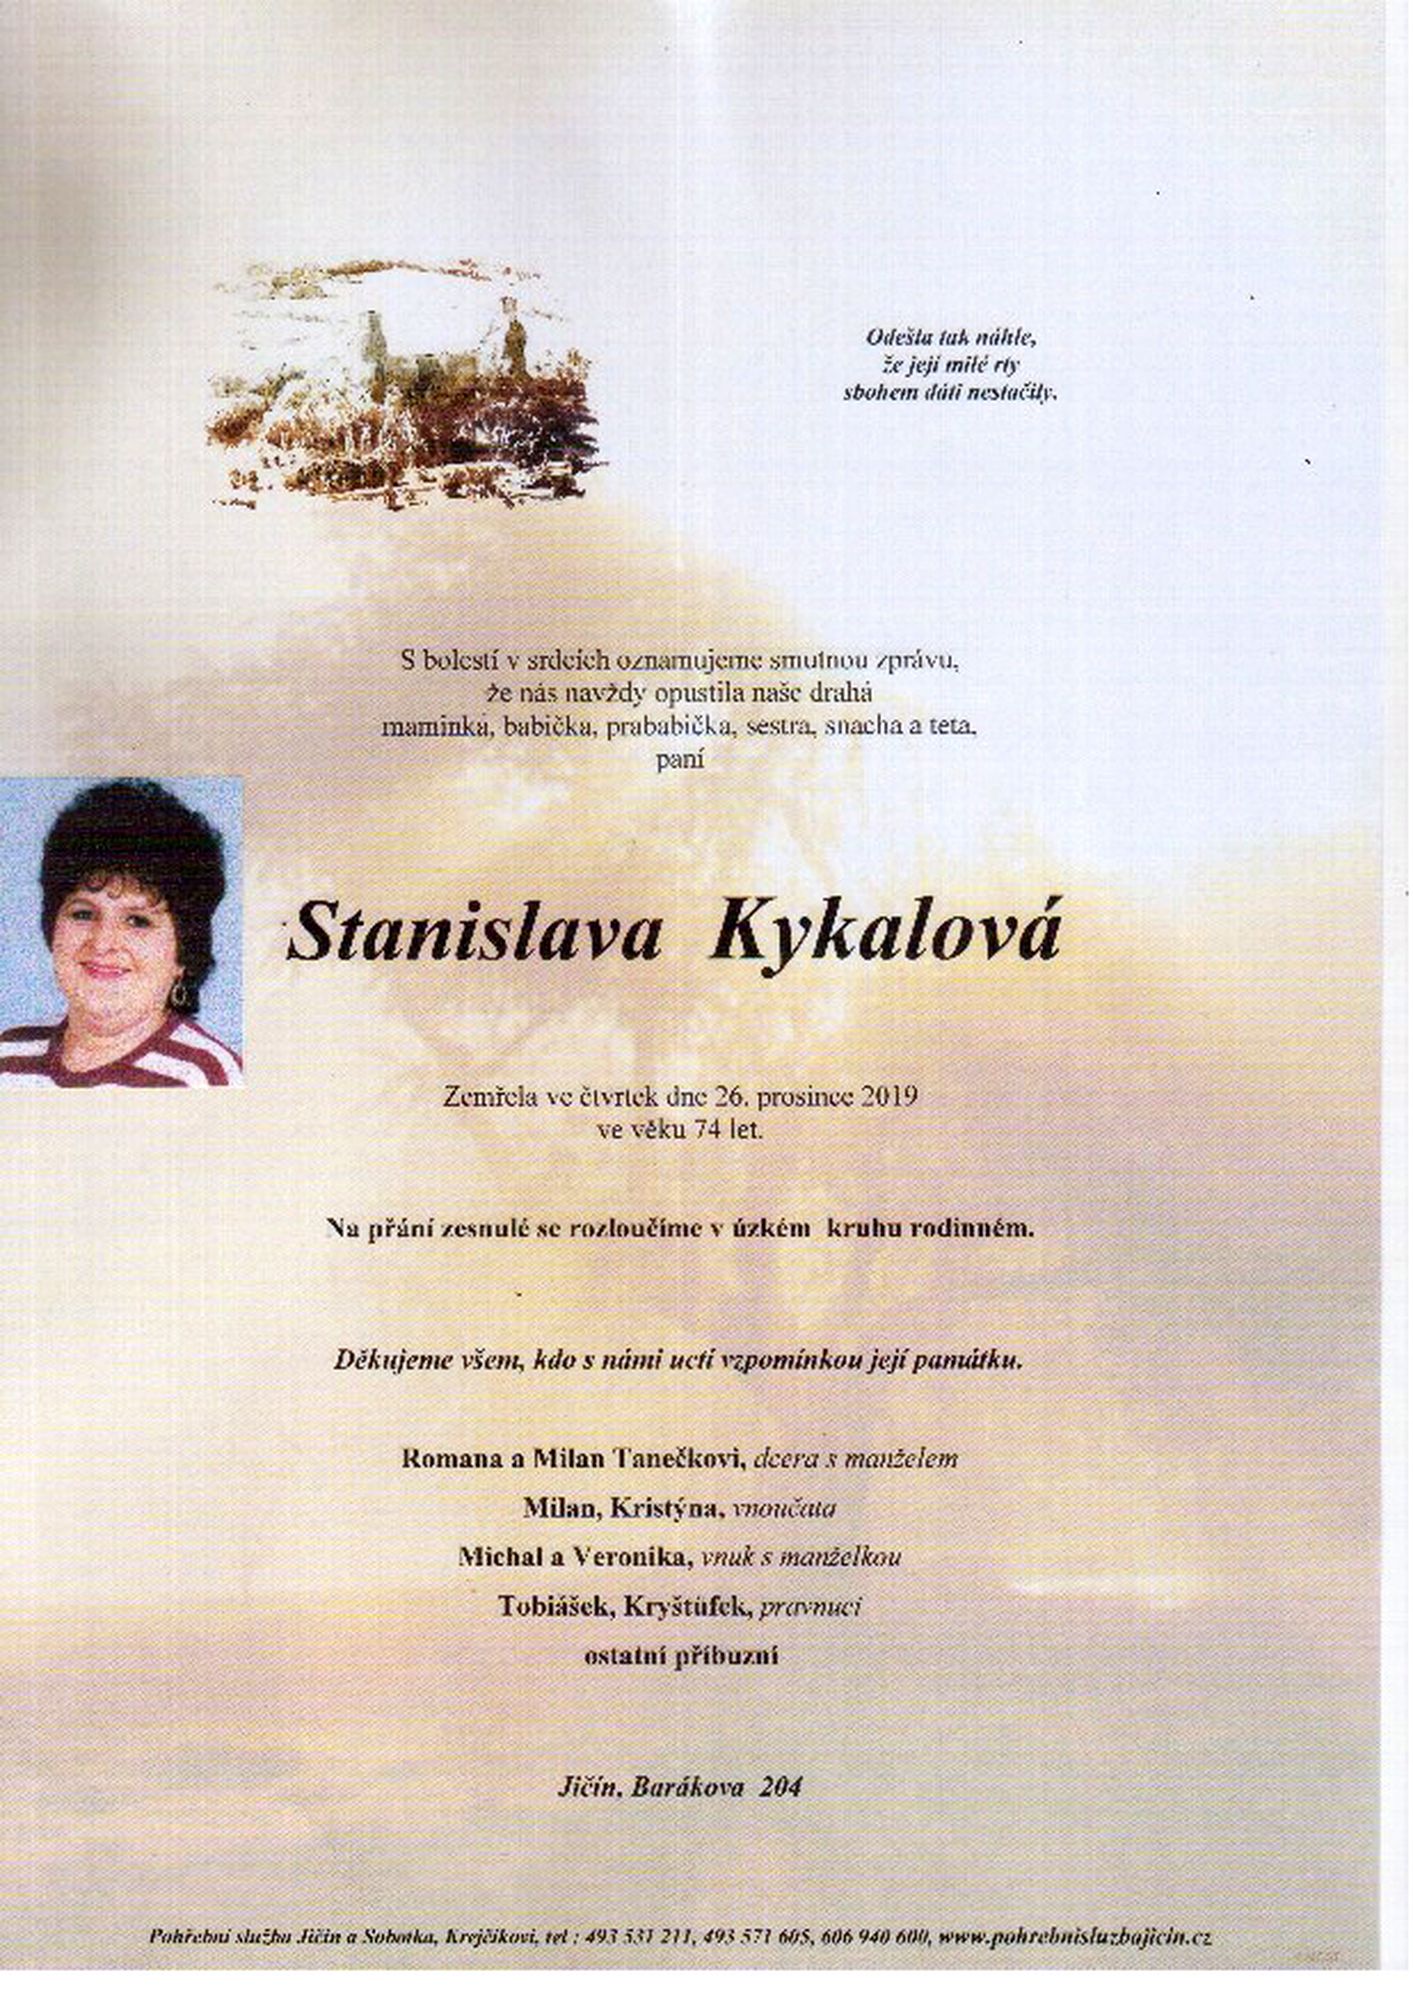 Stanislava Kykalová